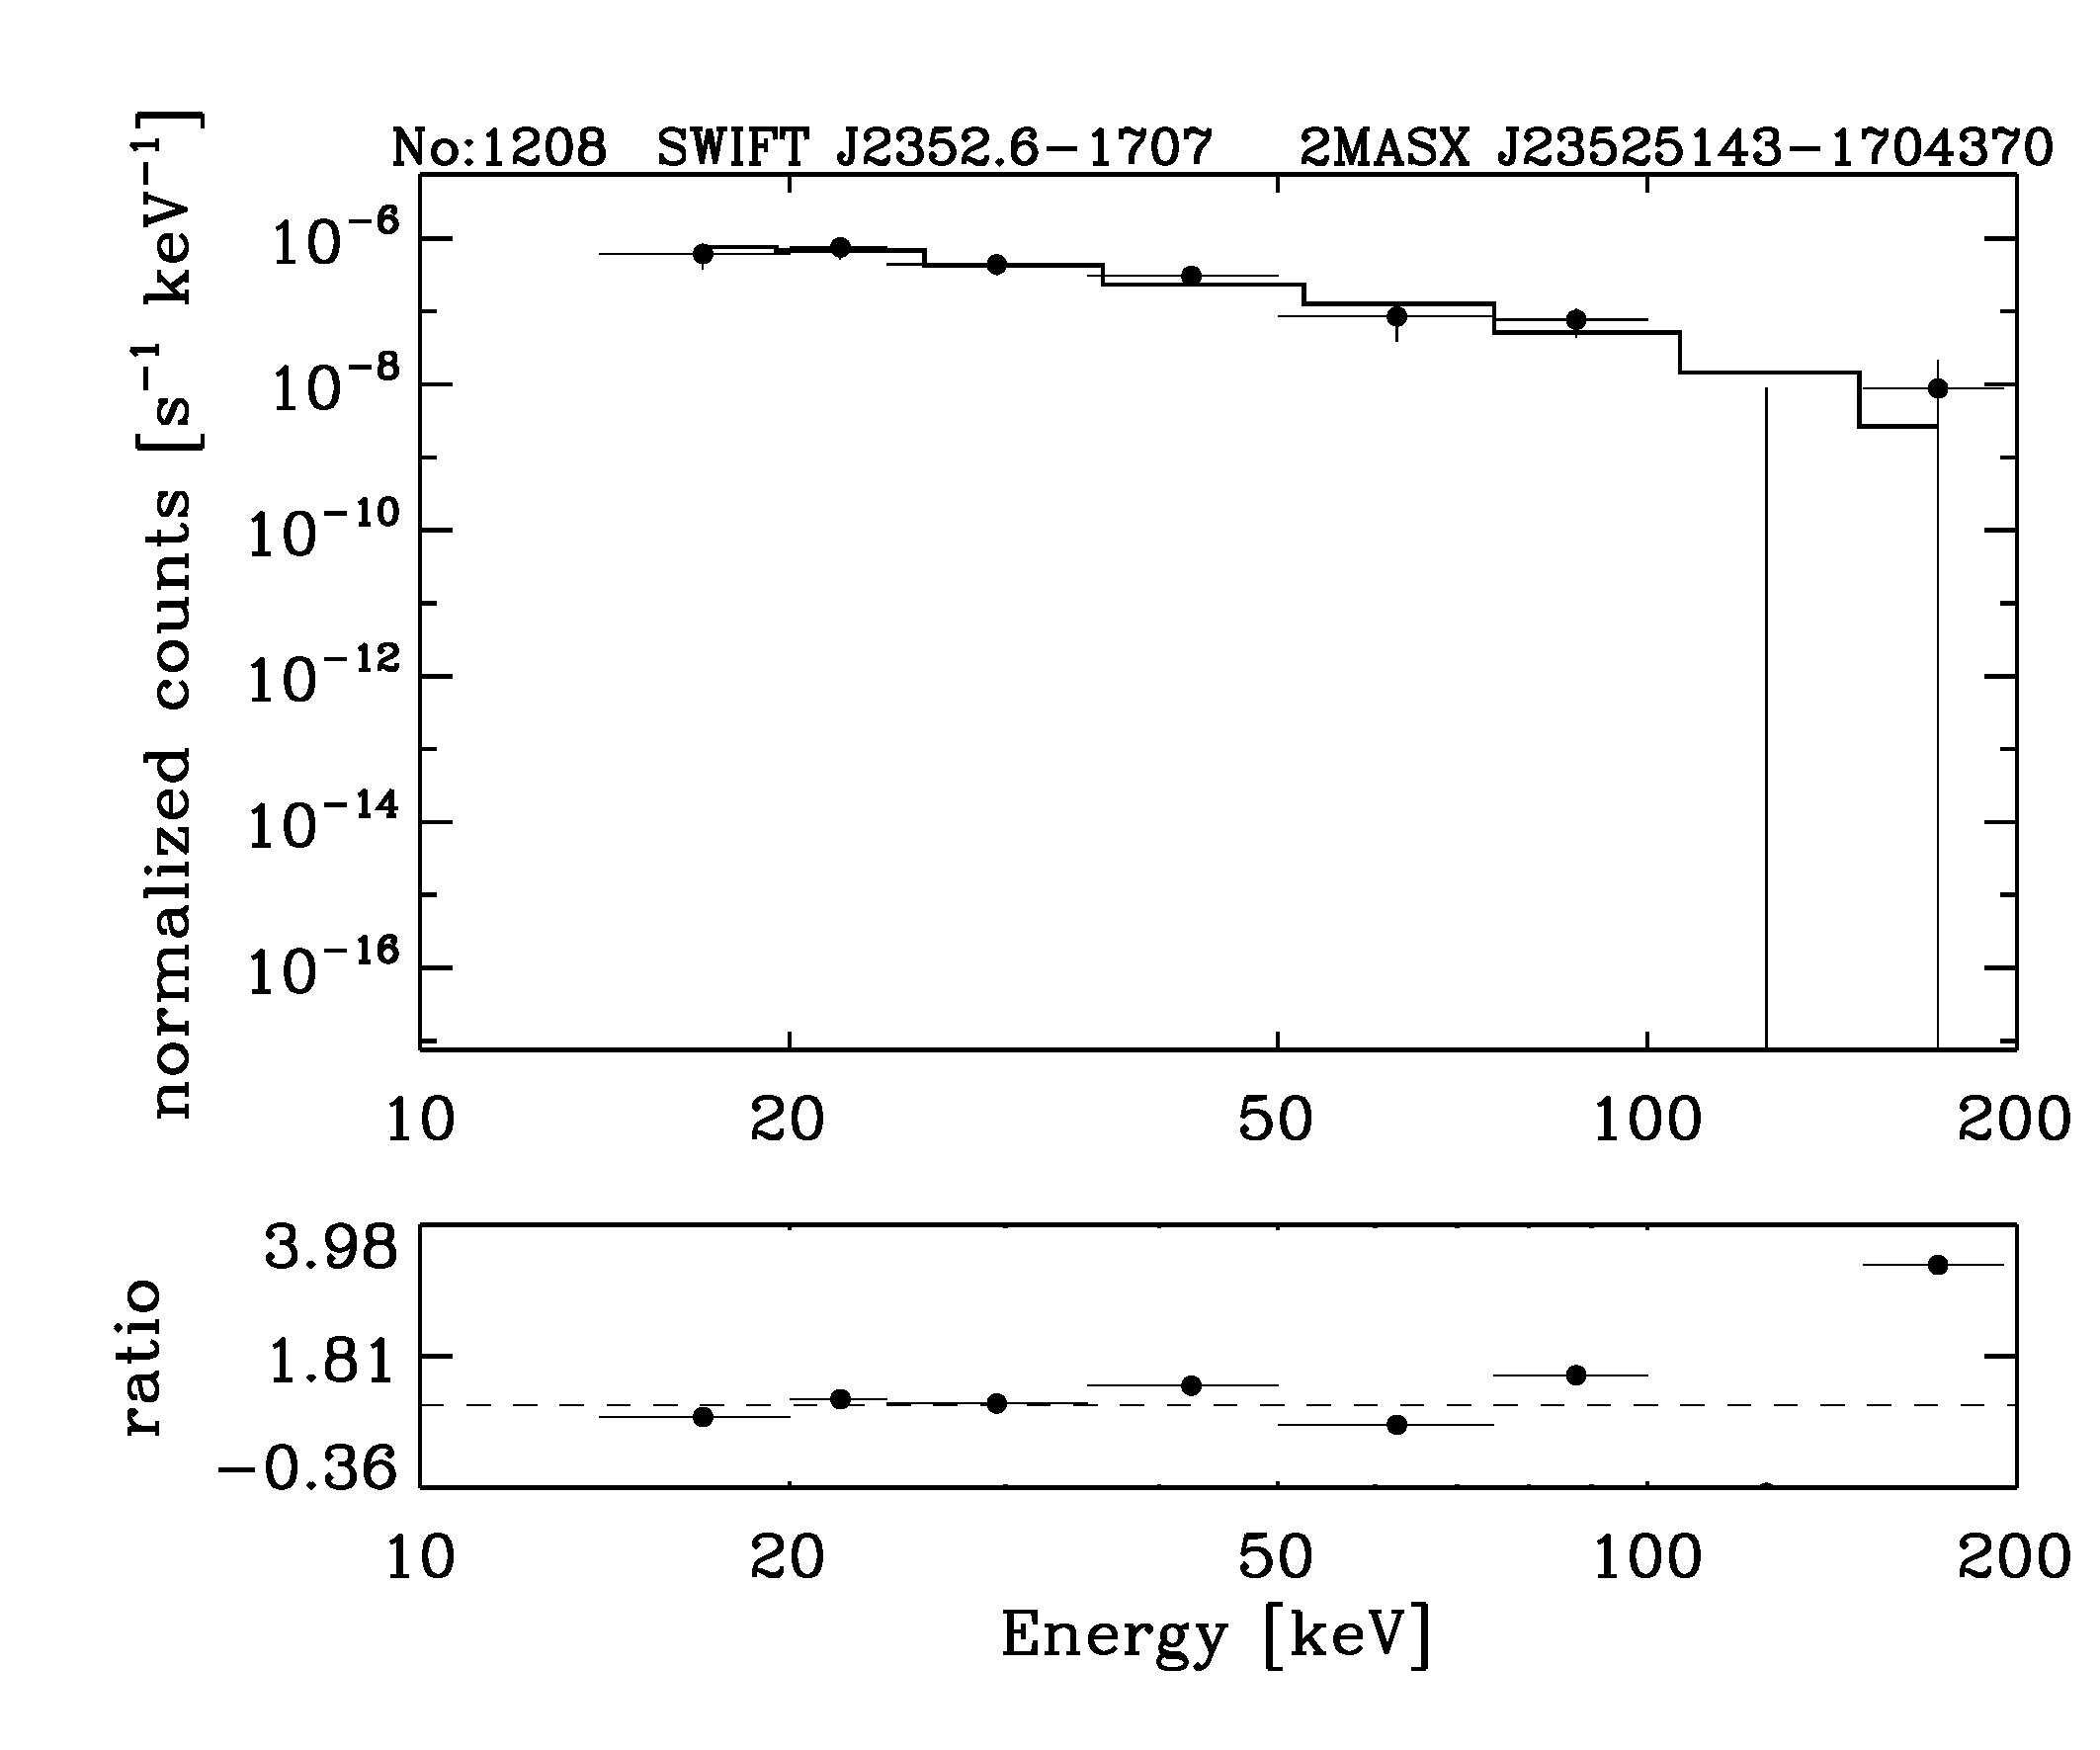 BAT Spectrum for SWIFT J2352.6-1707